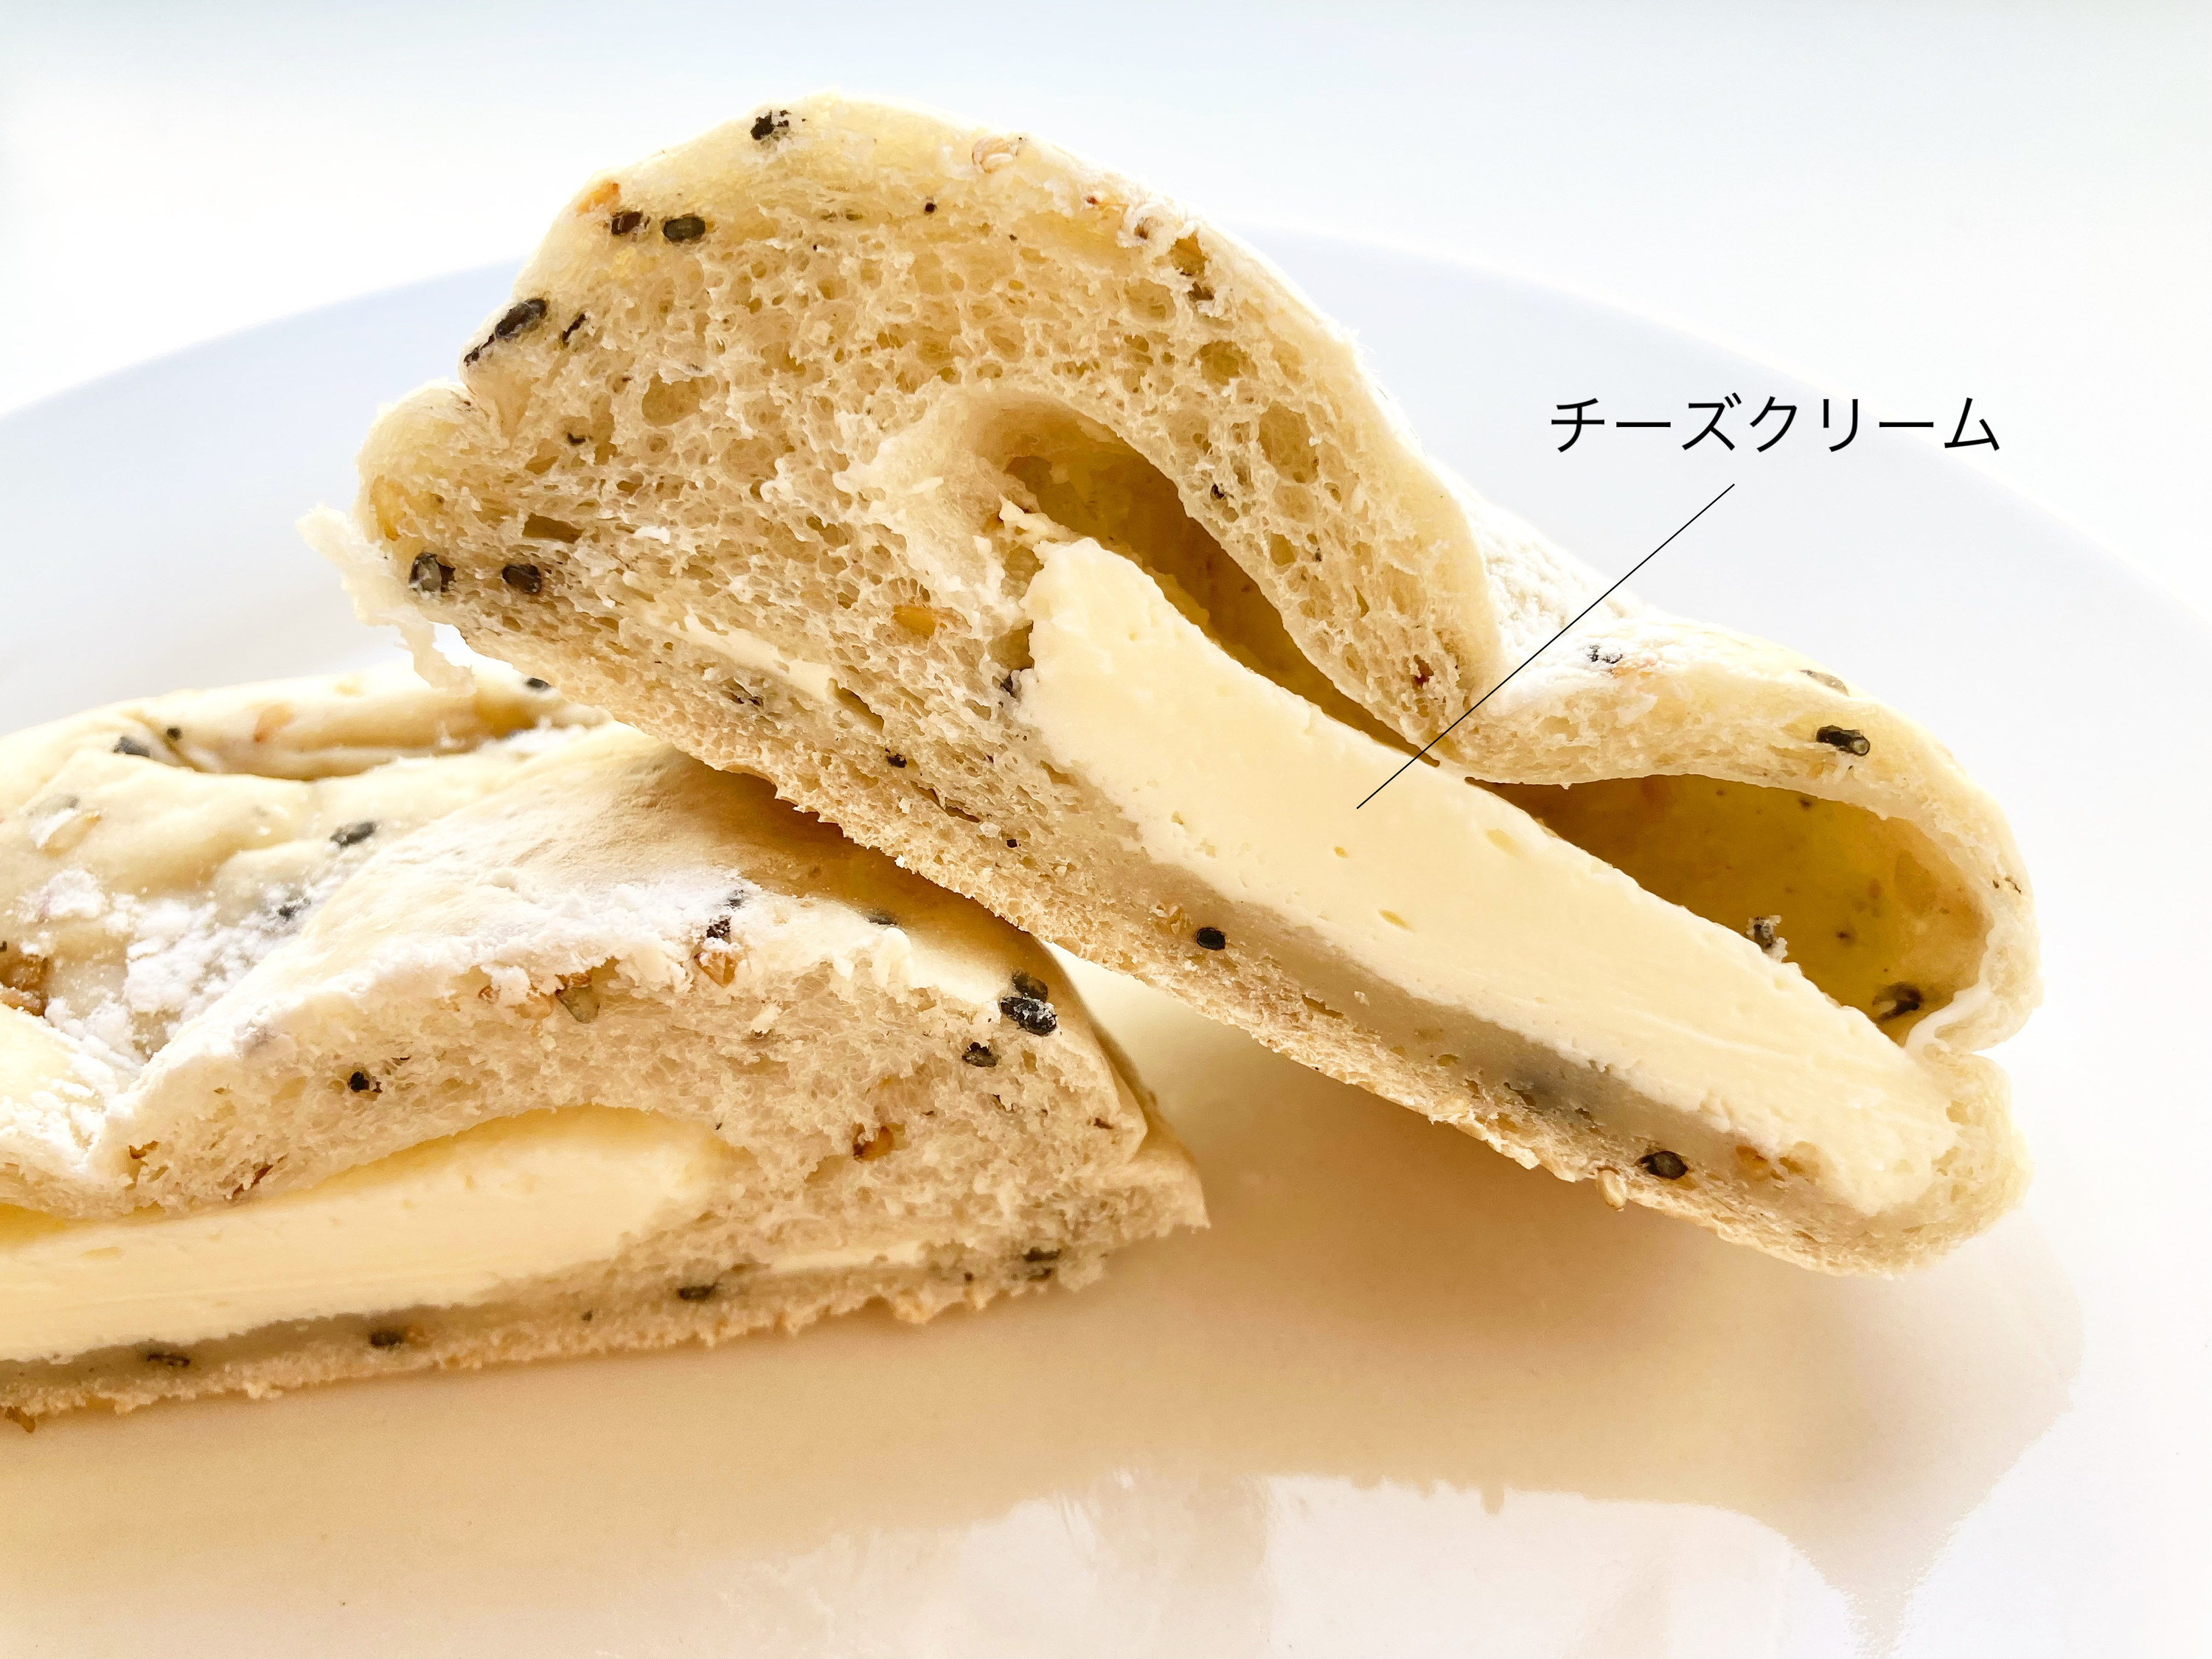 セブン-イレブンのふわもちパン「７プレミアム ごまとチーズクリームのパン」